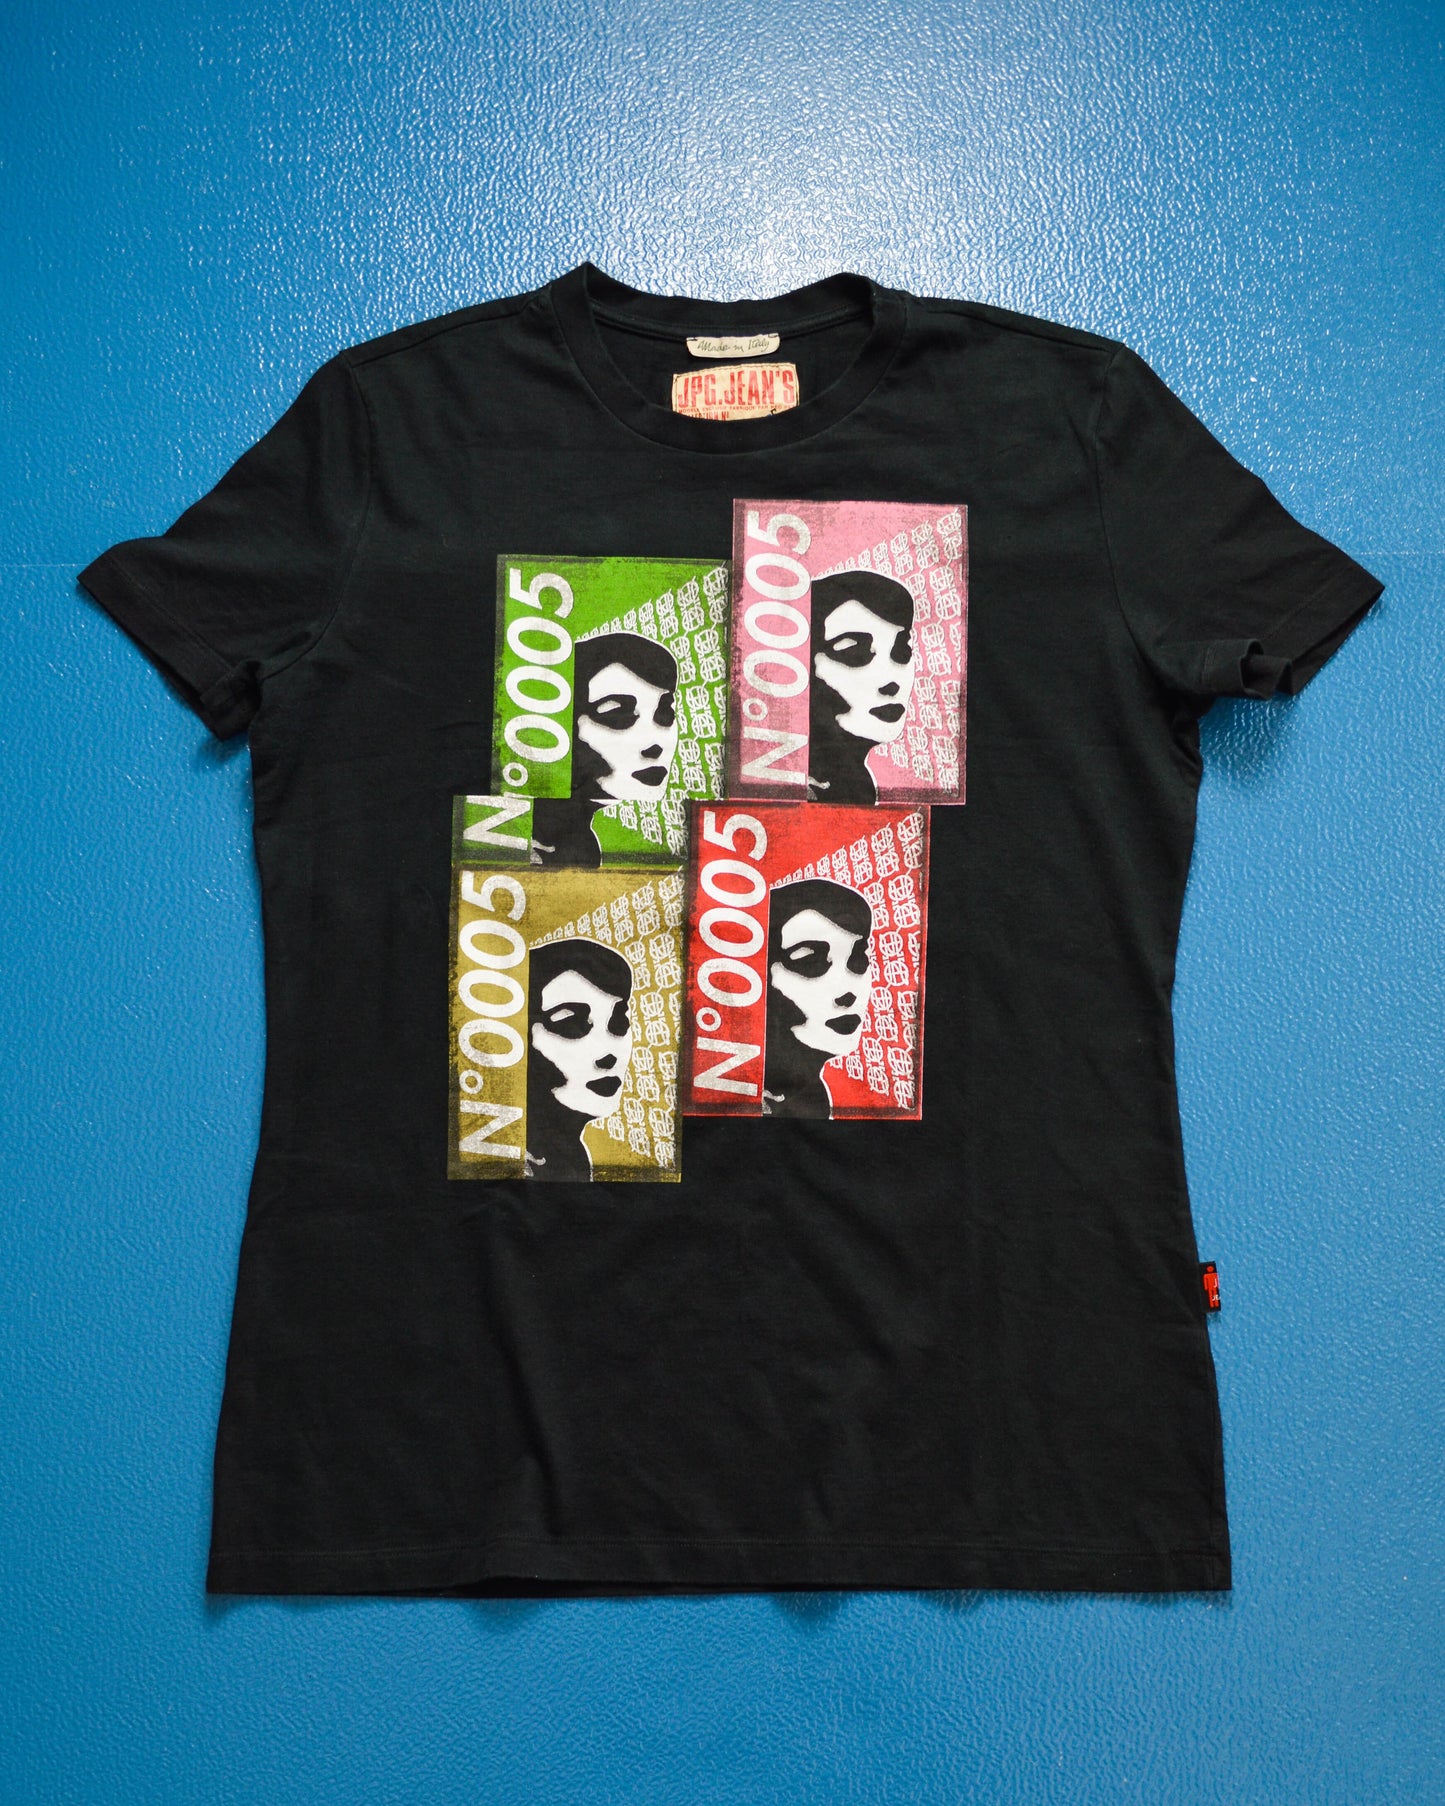 Jean Paul Gaultier Faces Billboard Black T-shirt (L)